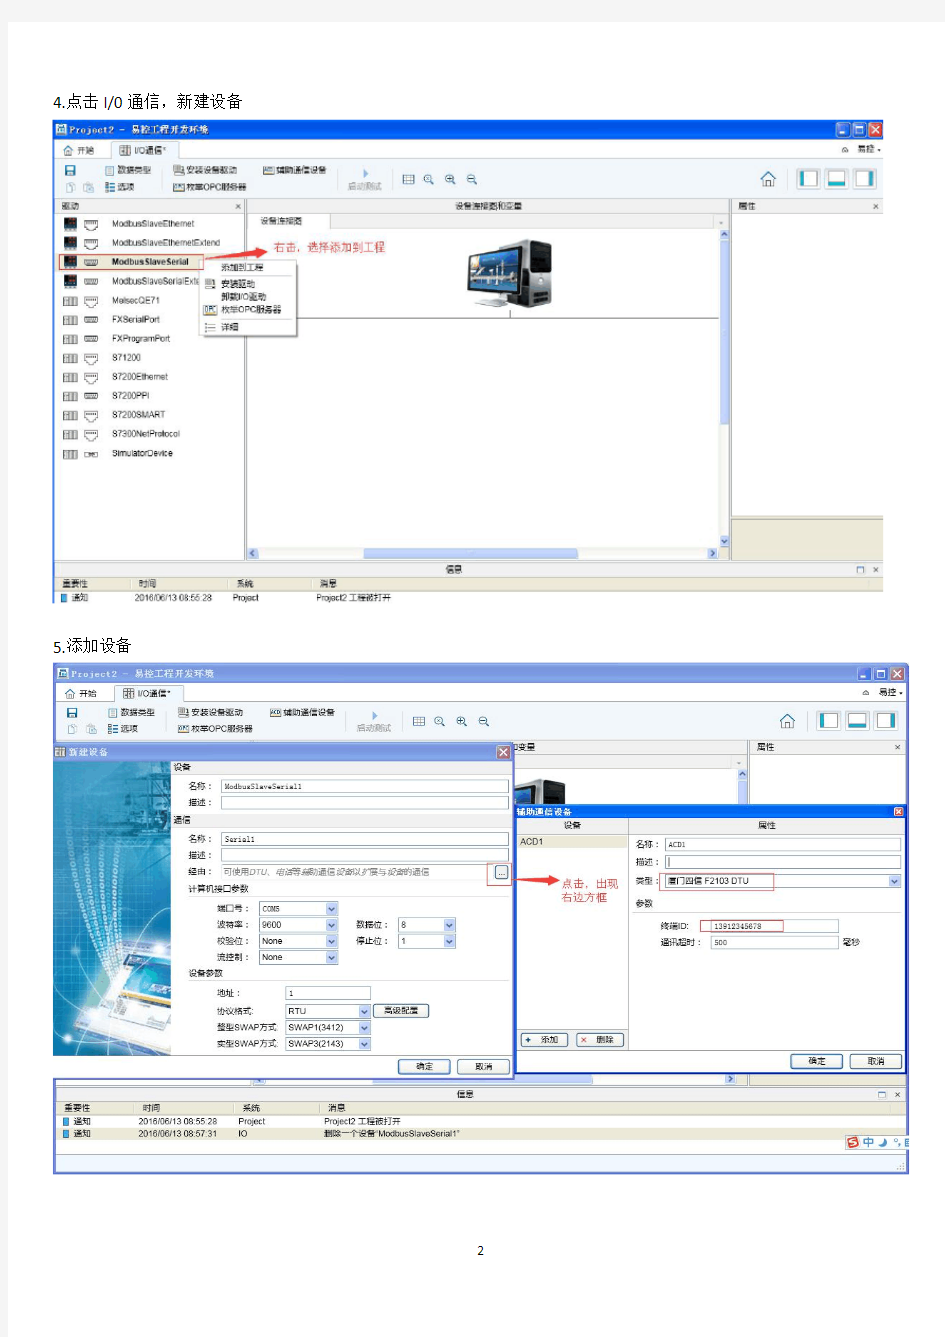 新版易控软件+F2103+PLC通讯的配置说明文档